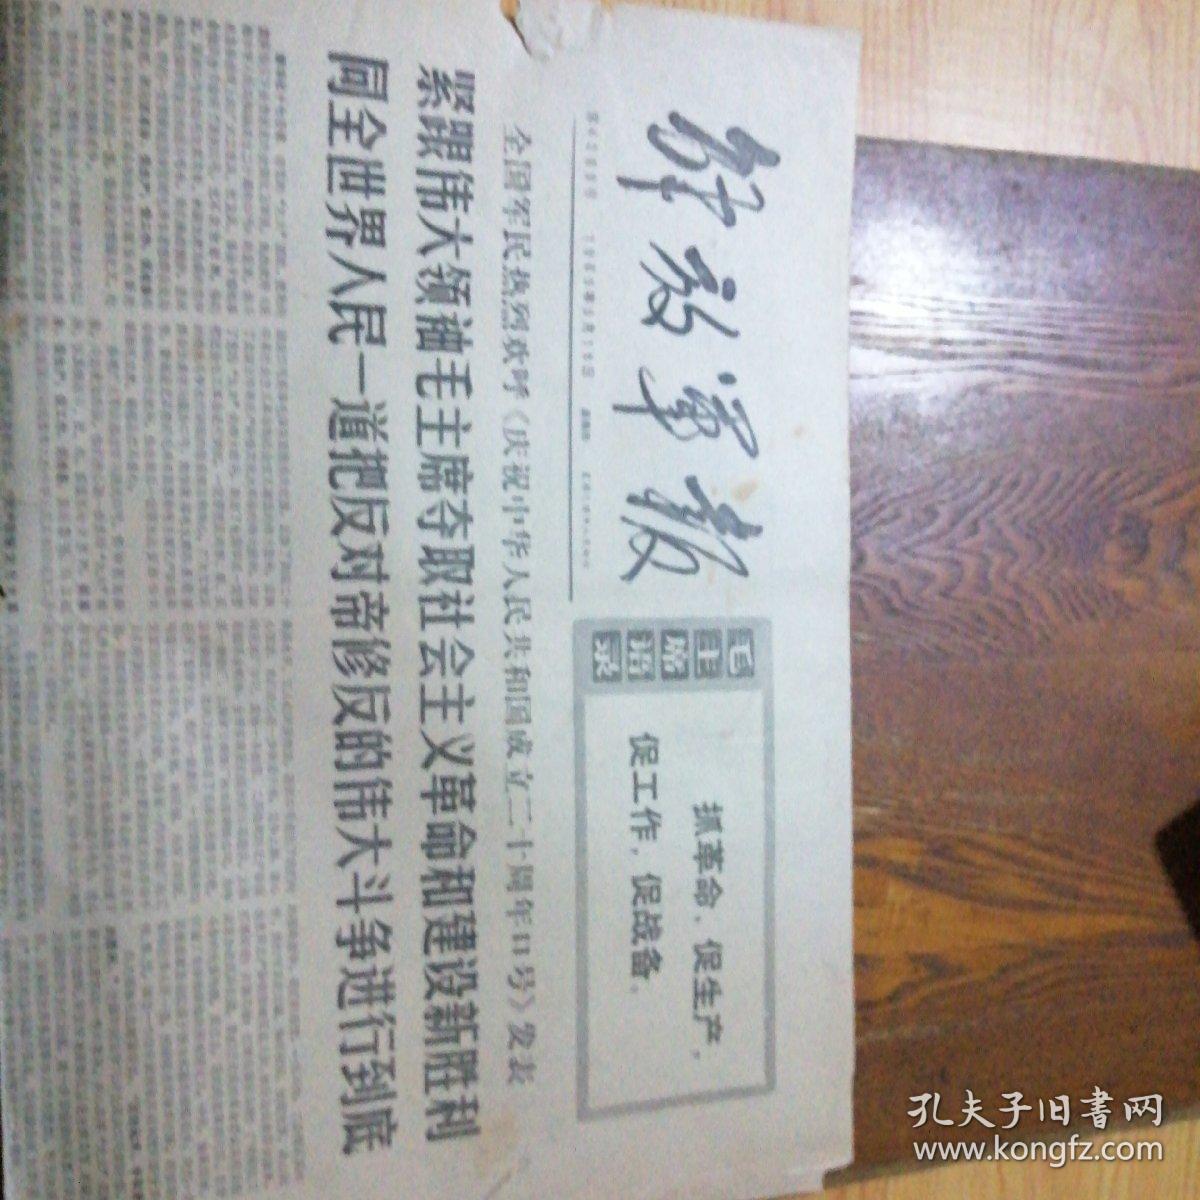 解放军报 1969年9月18日(4开4版) 紧跟伟大领袖毛主席夺取社会主义革命和建设新胜利 同全世界人民一道把反对帝修反的伟大斗争进行到底